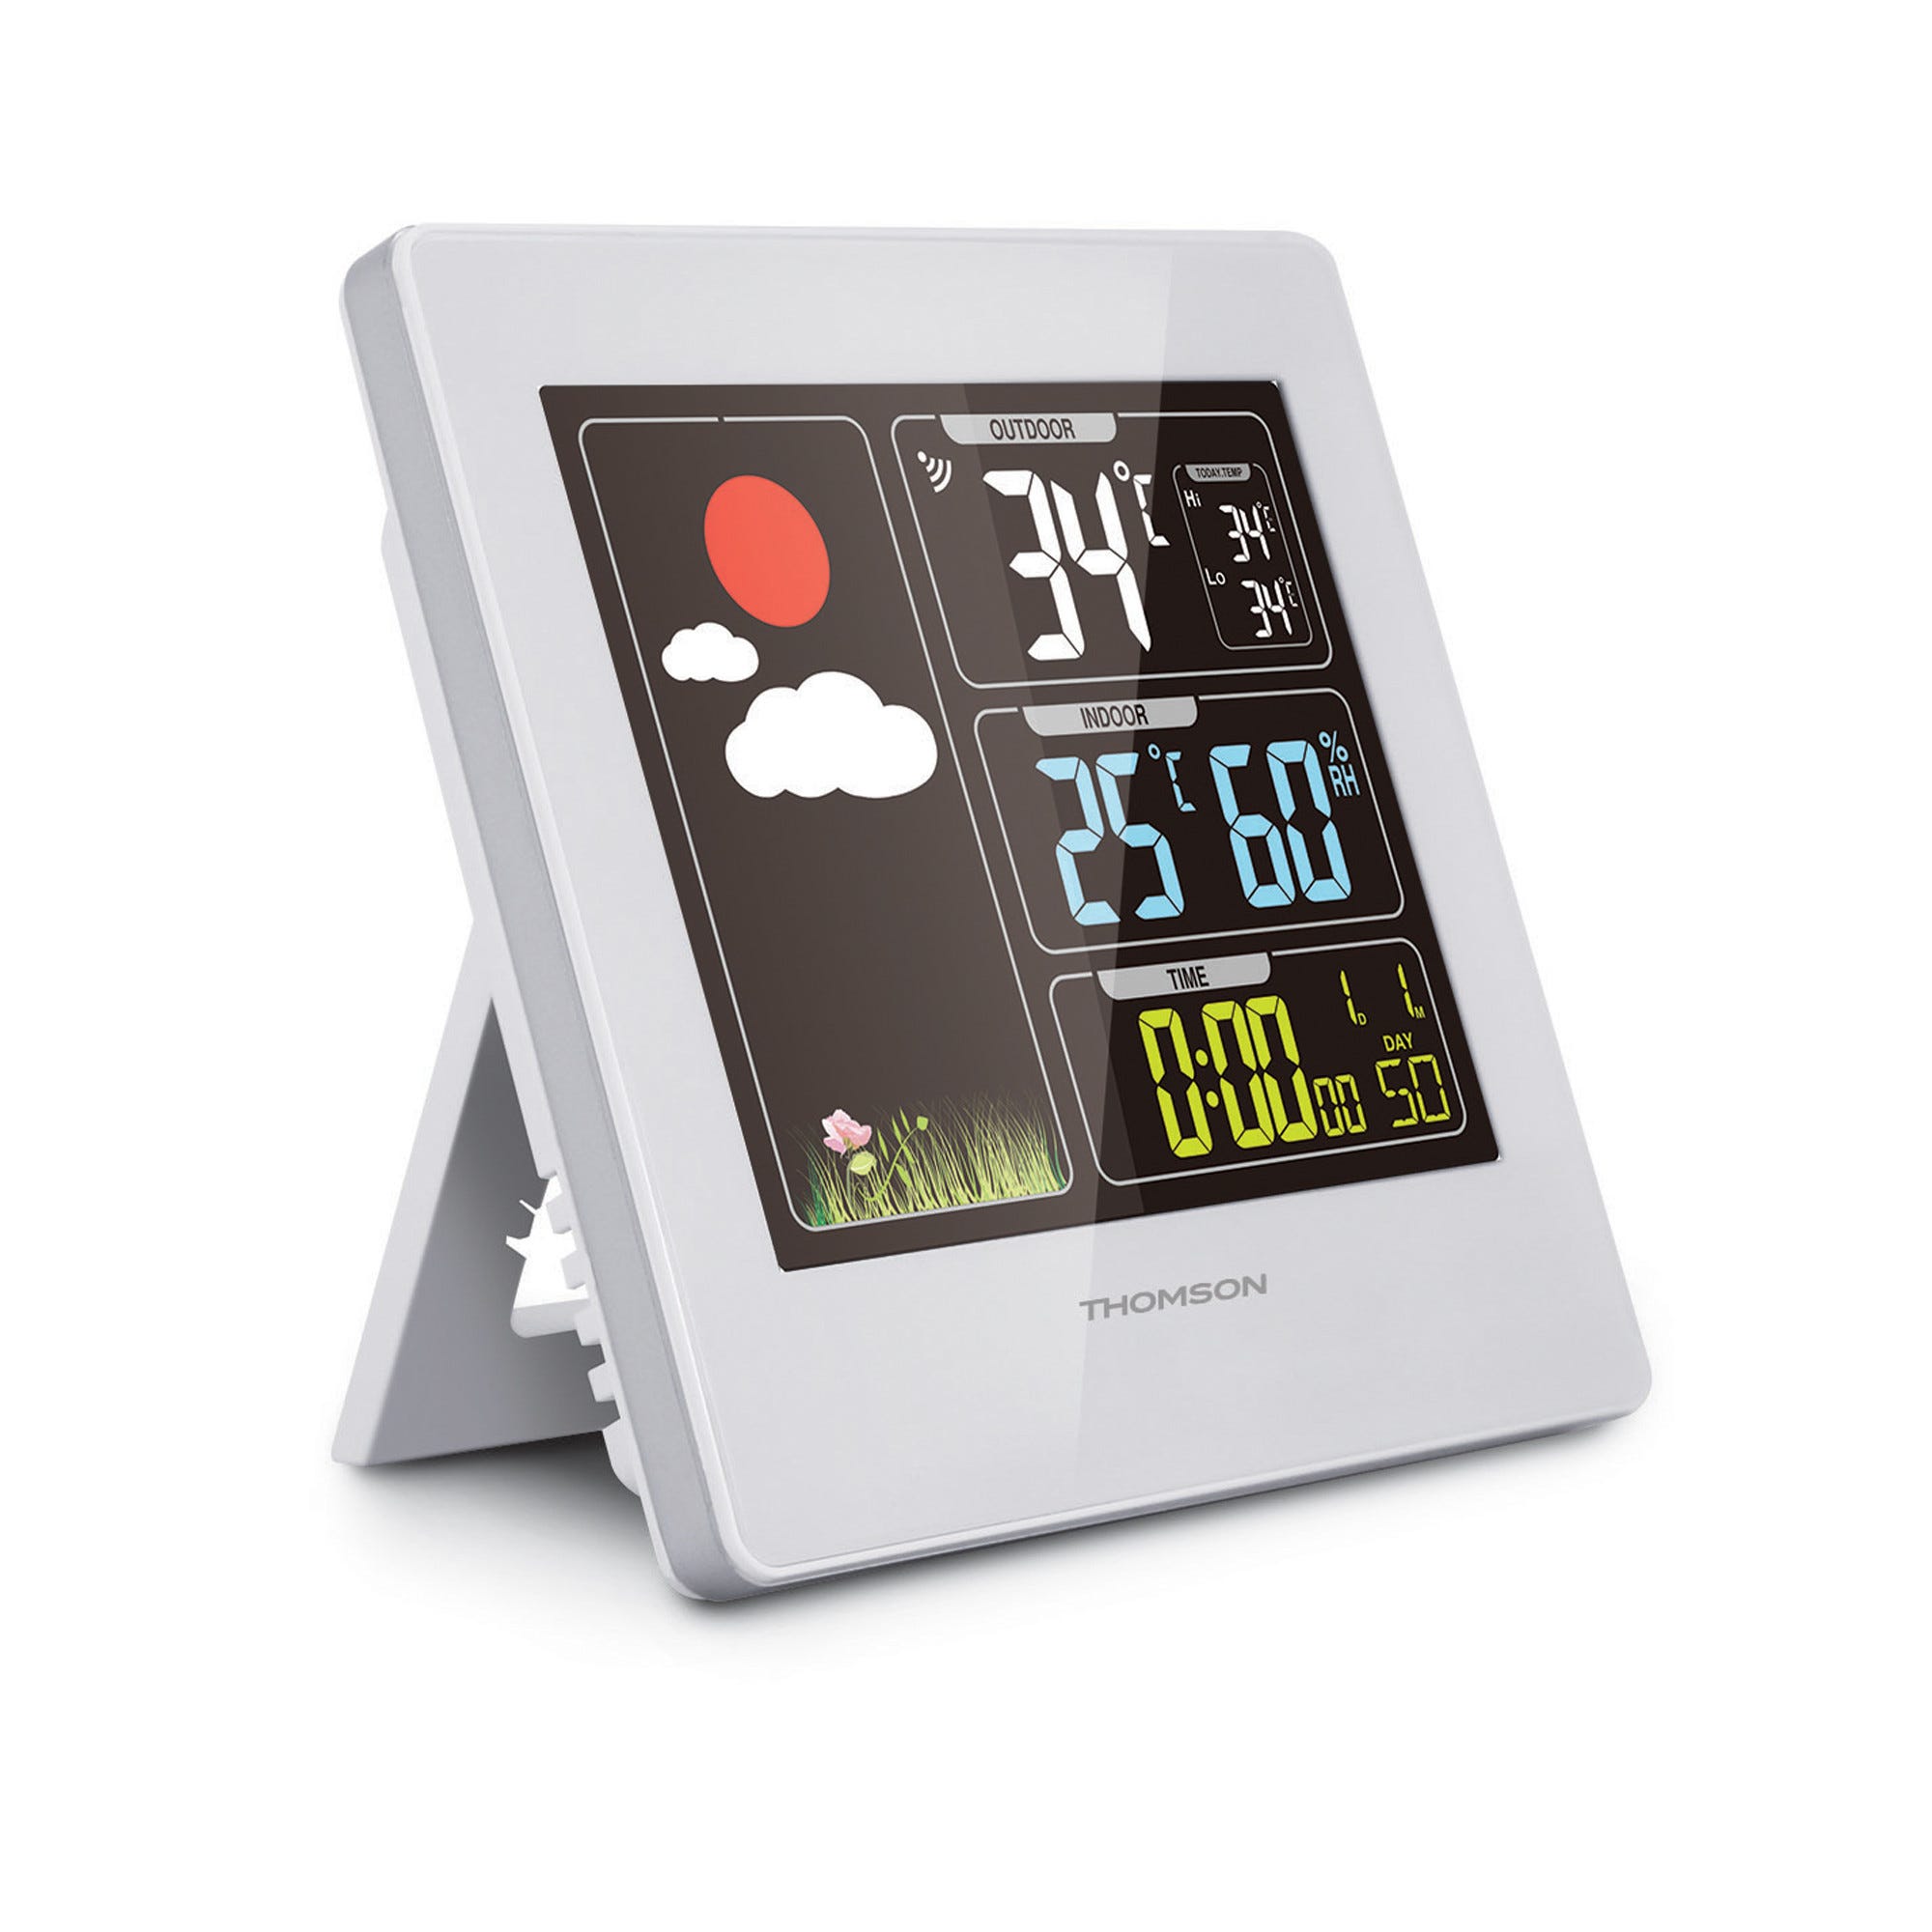 Station météo écran couleur sans fil affichage température  extérieur/intérieur Thomson